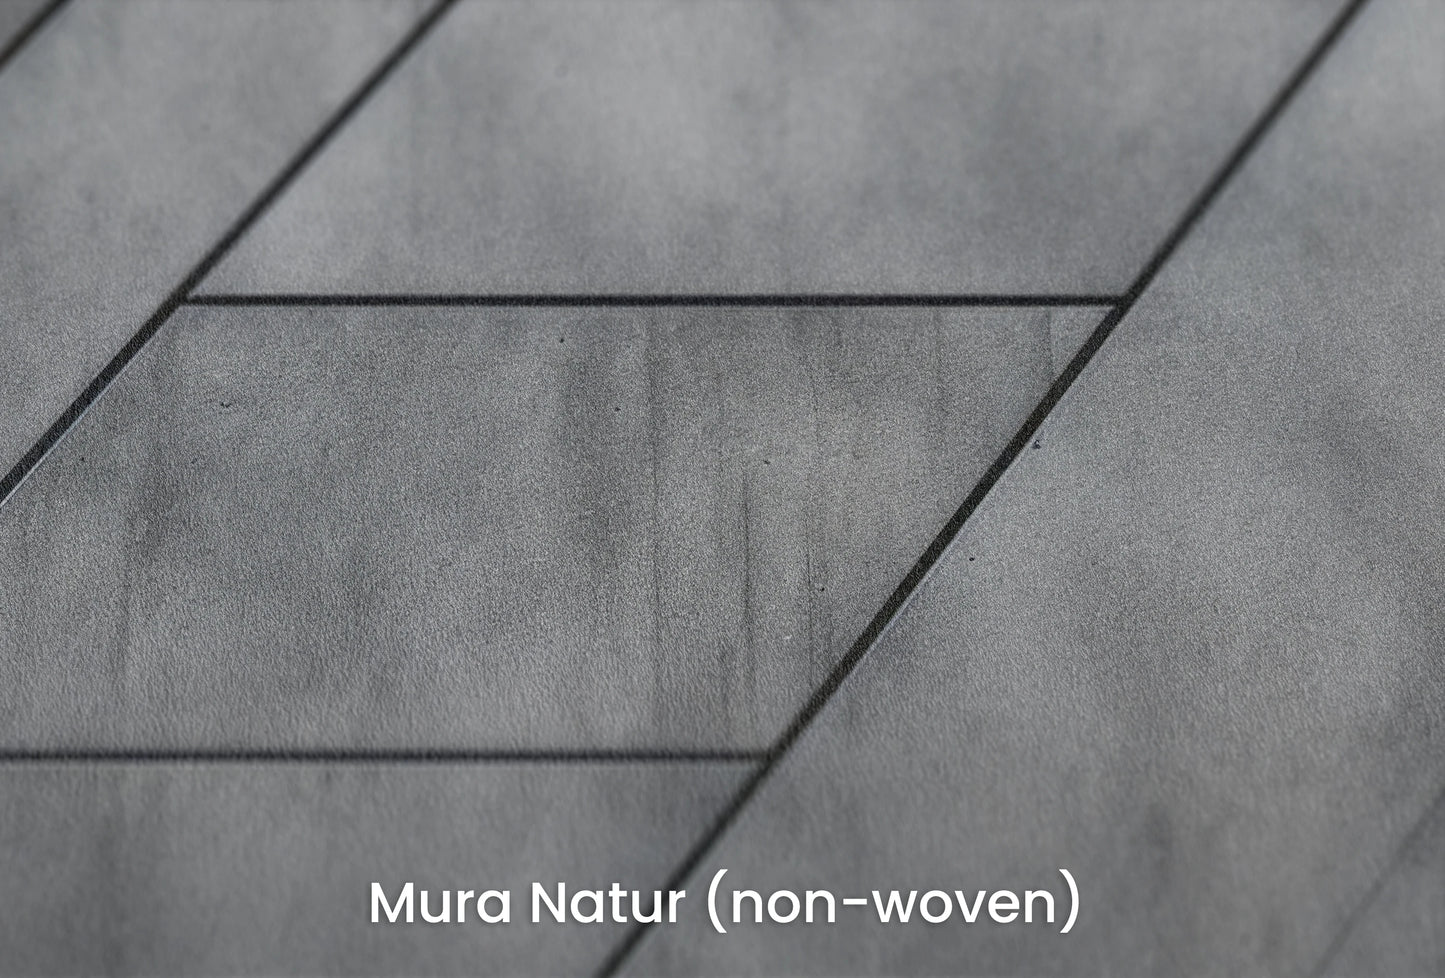 Zbliżenie na artystyczną fototapetę o nazwie Linear Perspective na podłożu Mura Natur (non-woven) - naturalne i ekologiczne podłoże.